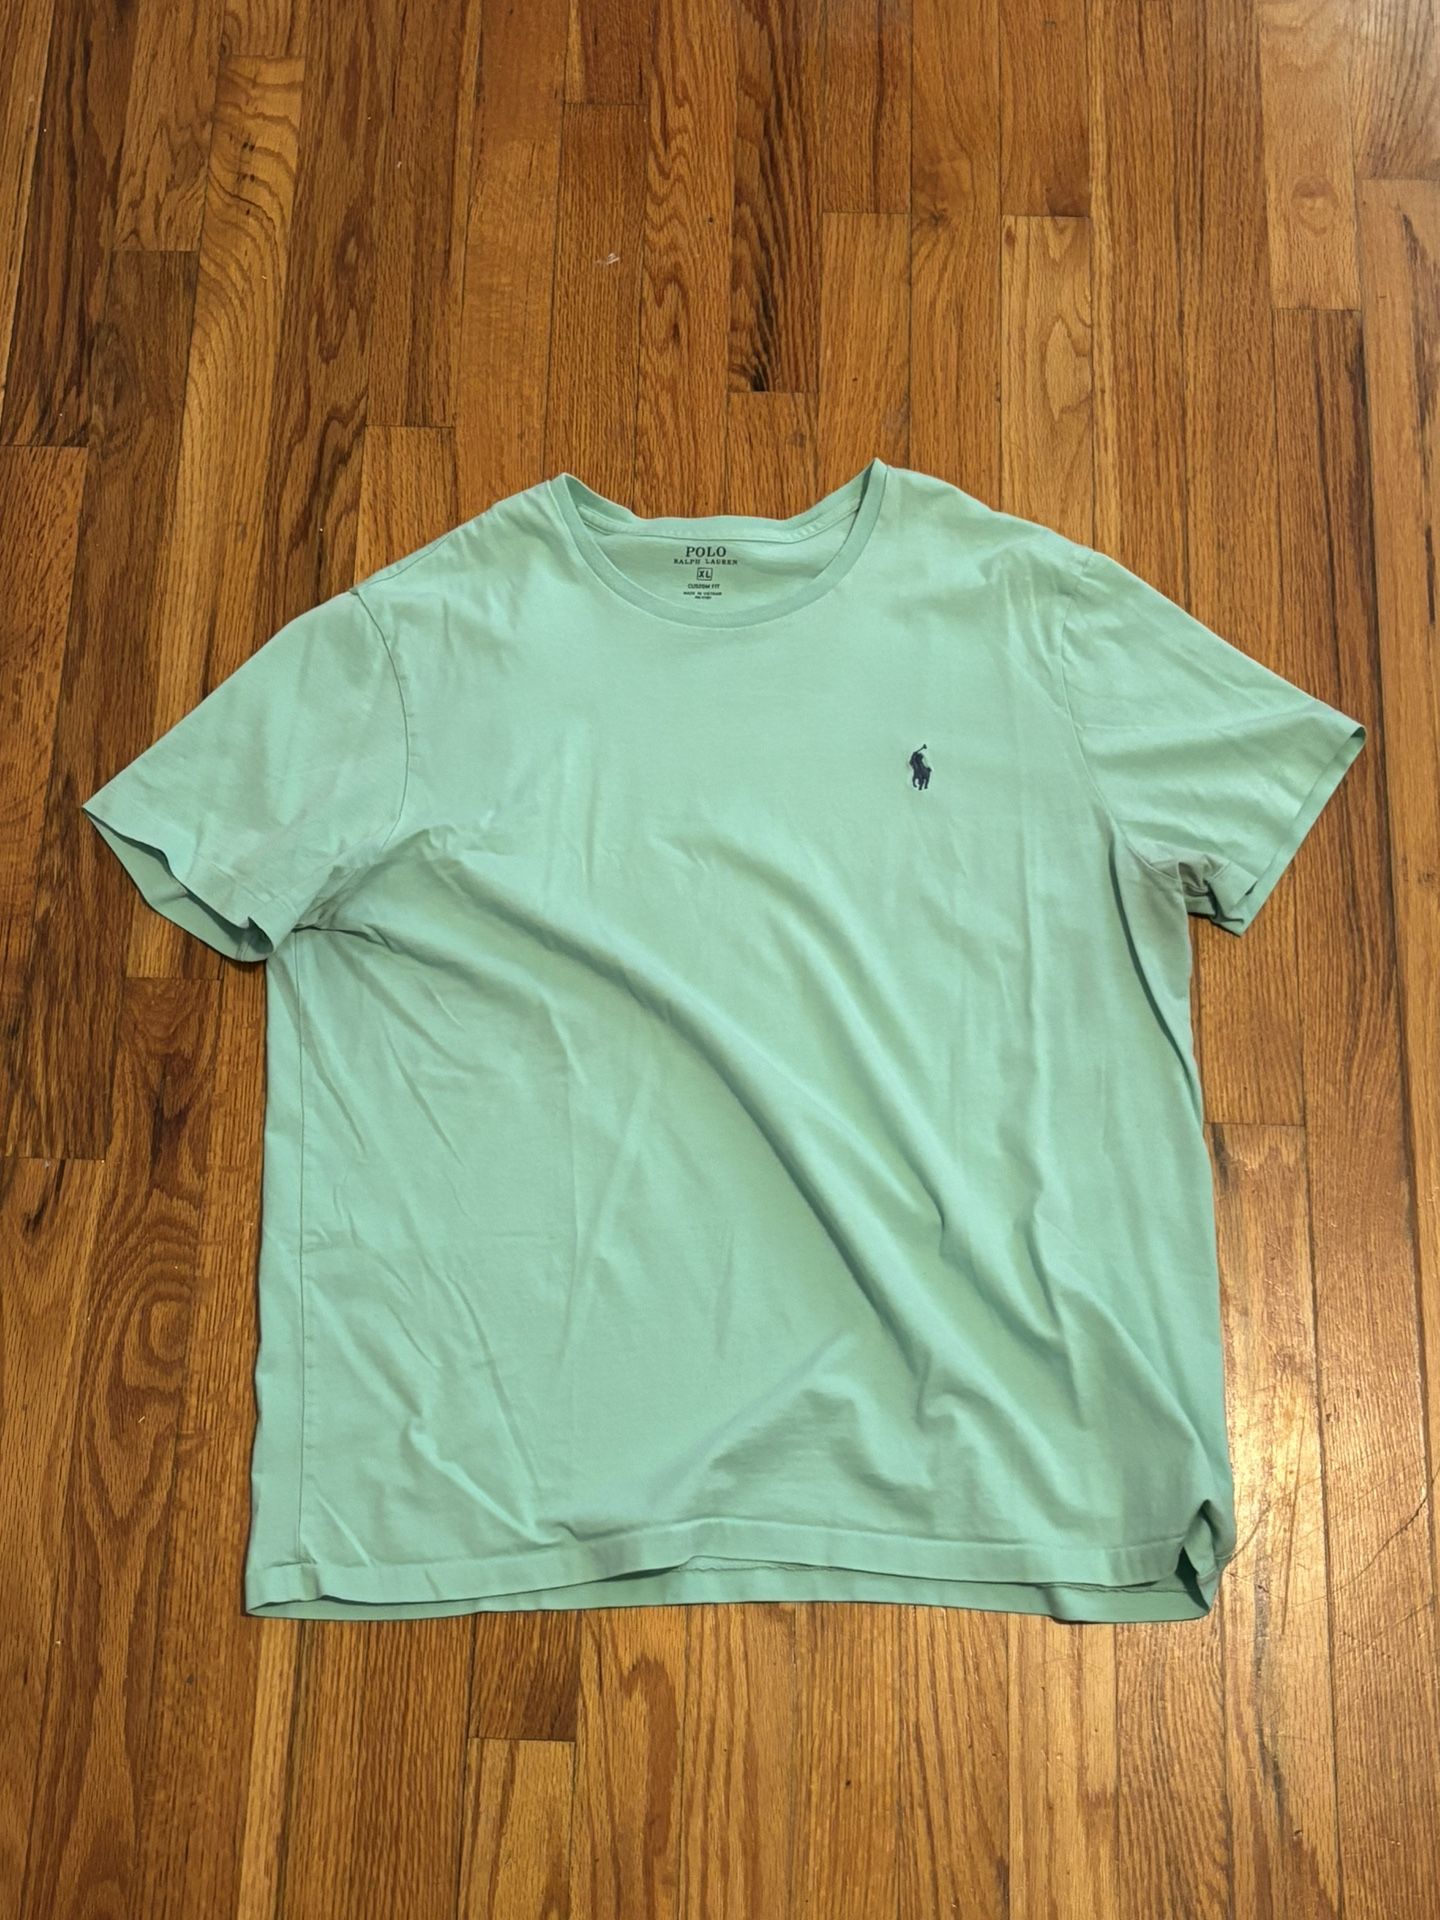 Teal Polo T-Shirt | XL